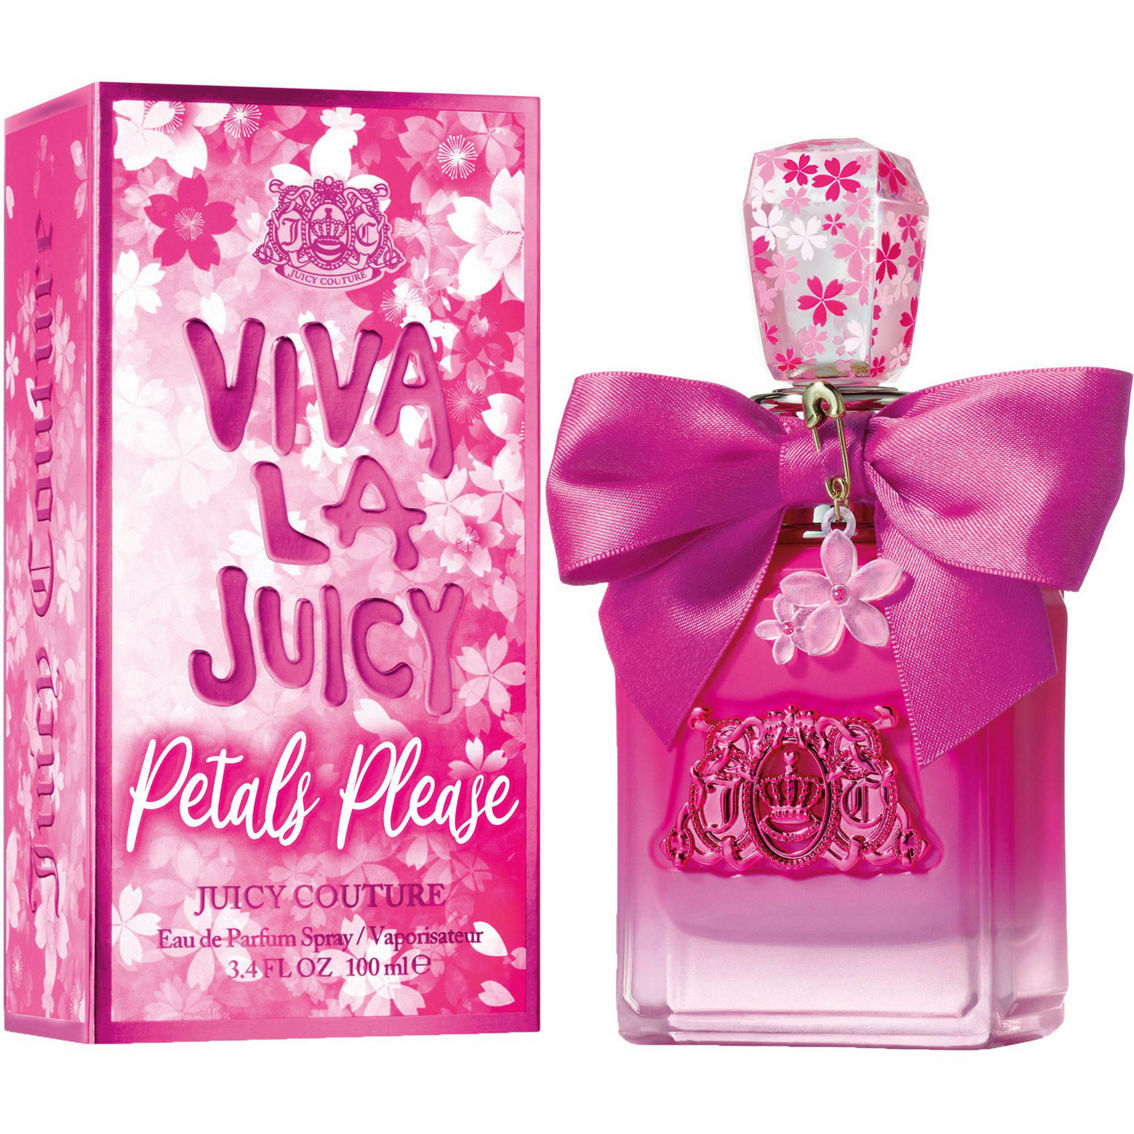 Juicy Couture Viva La Juicy Petals Please Eau de Parfum Spray 3.4 oz. - Image 2 of 2